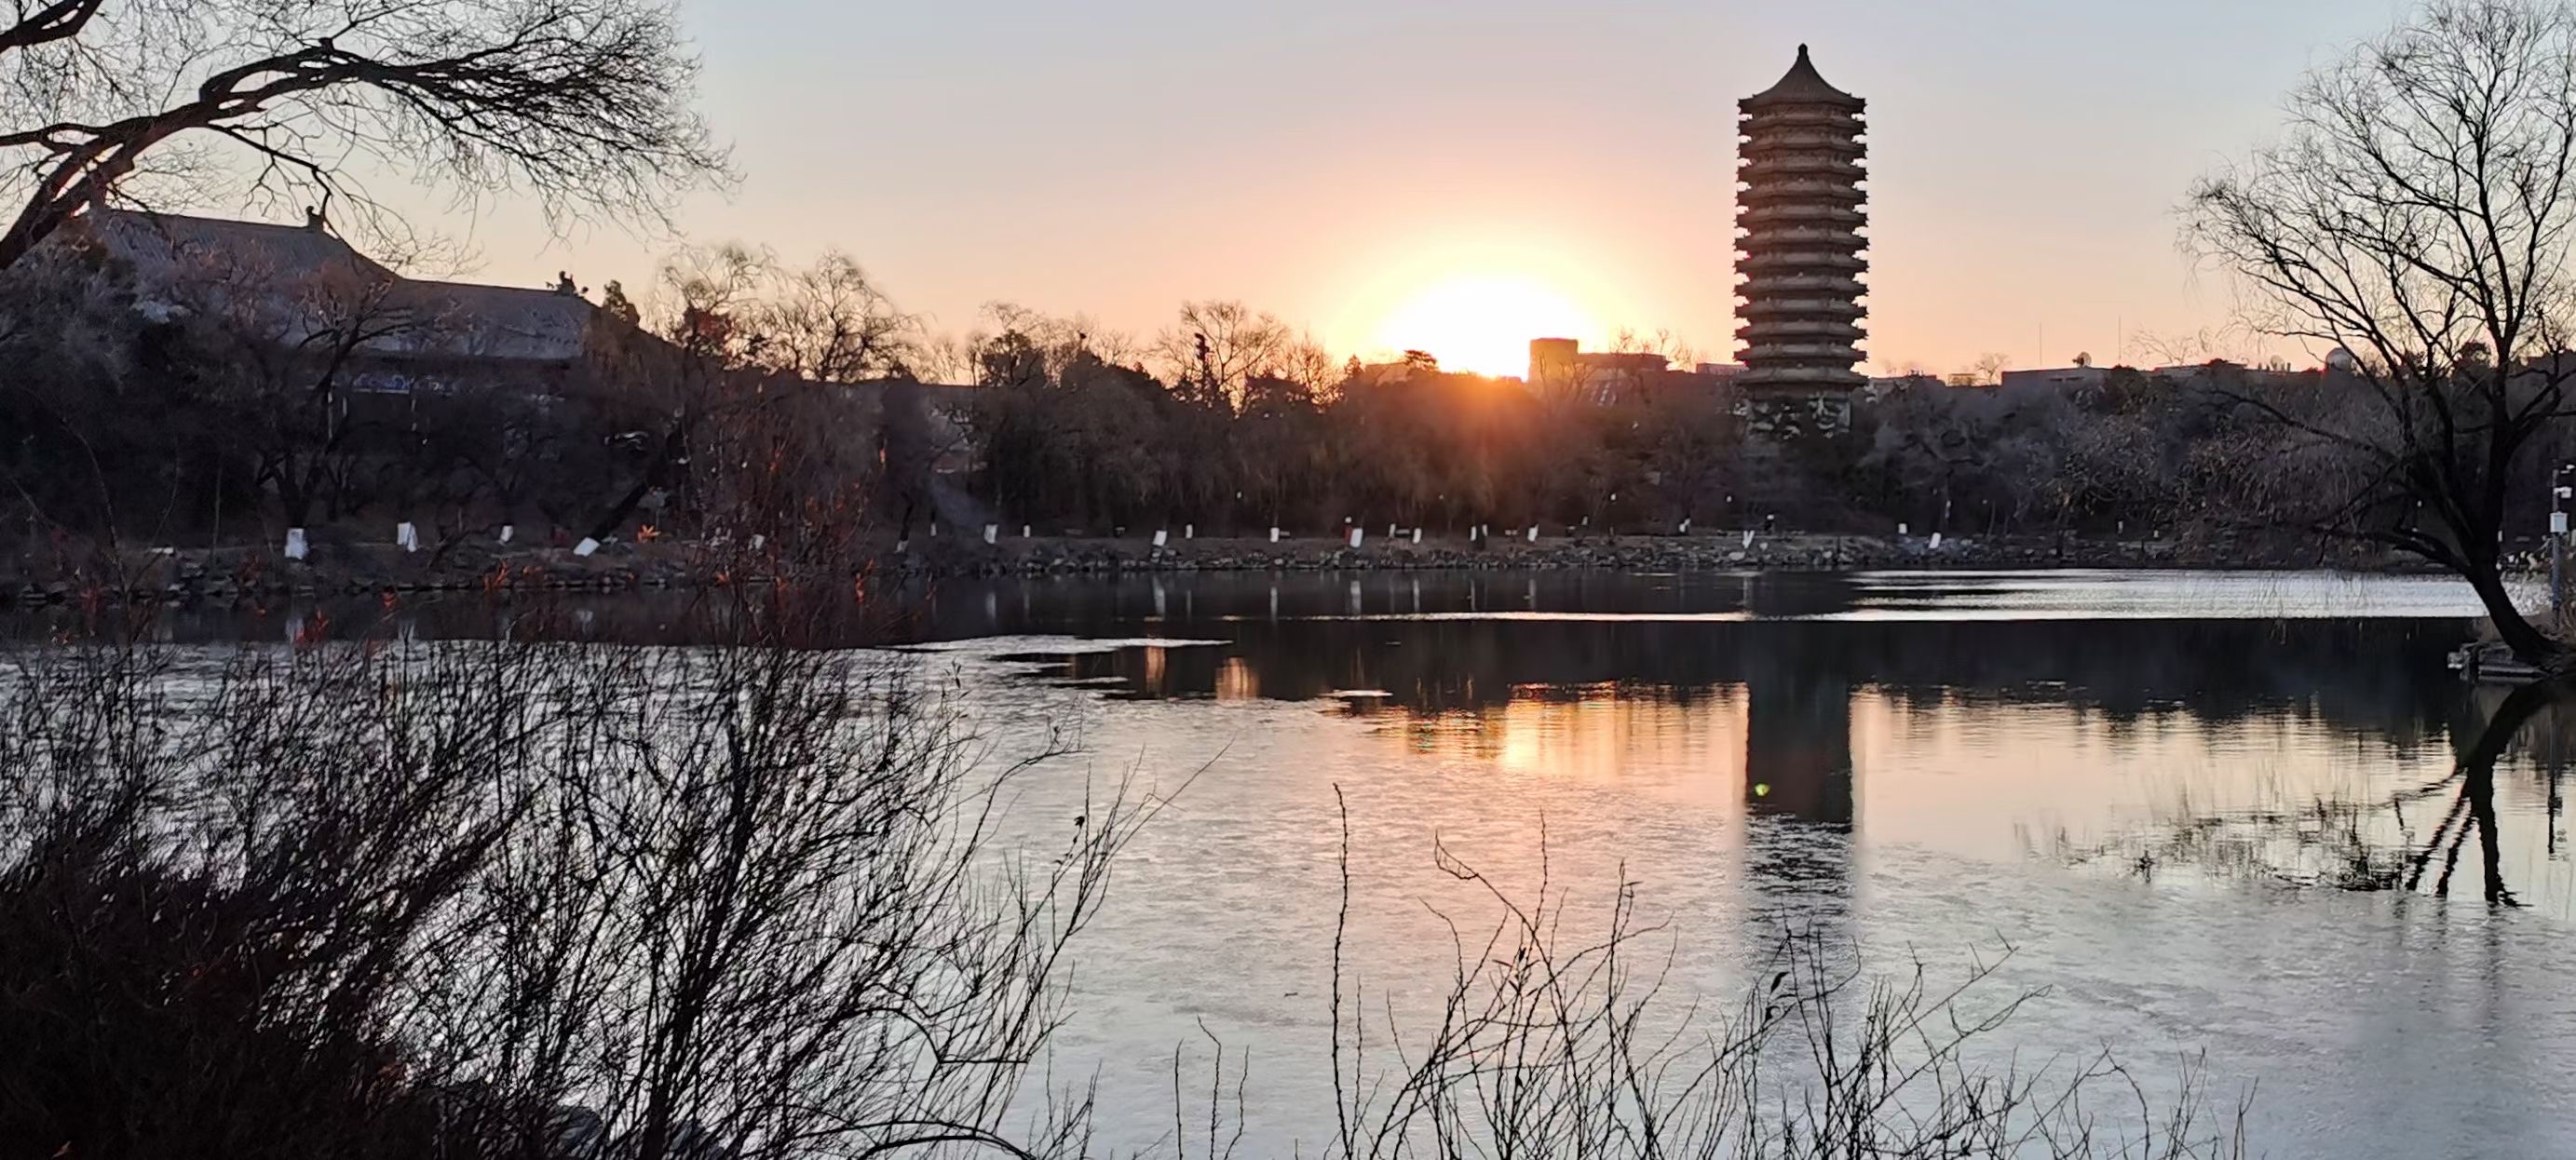 北京大学未名湖景观.jpg